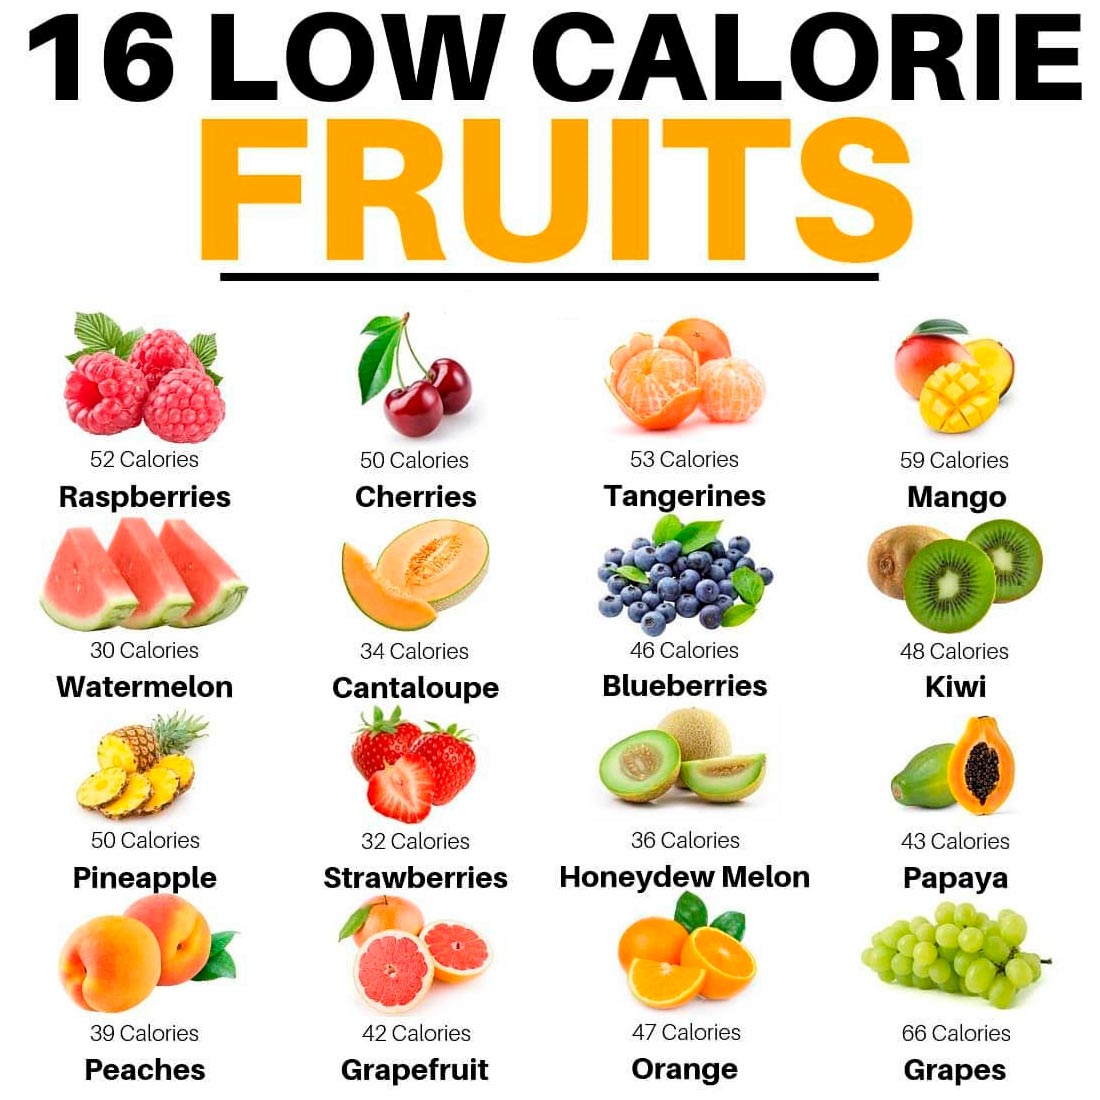 16 Low Calorie Fruits